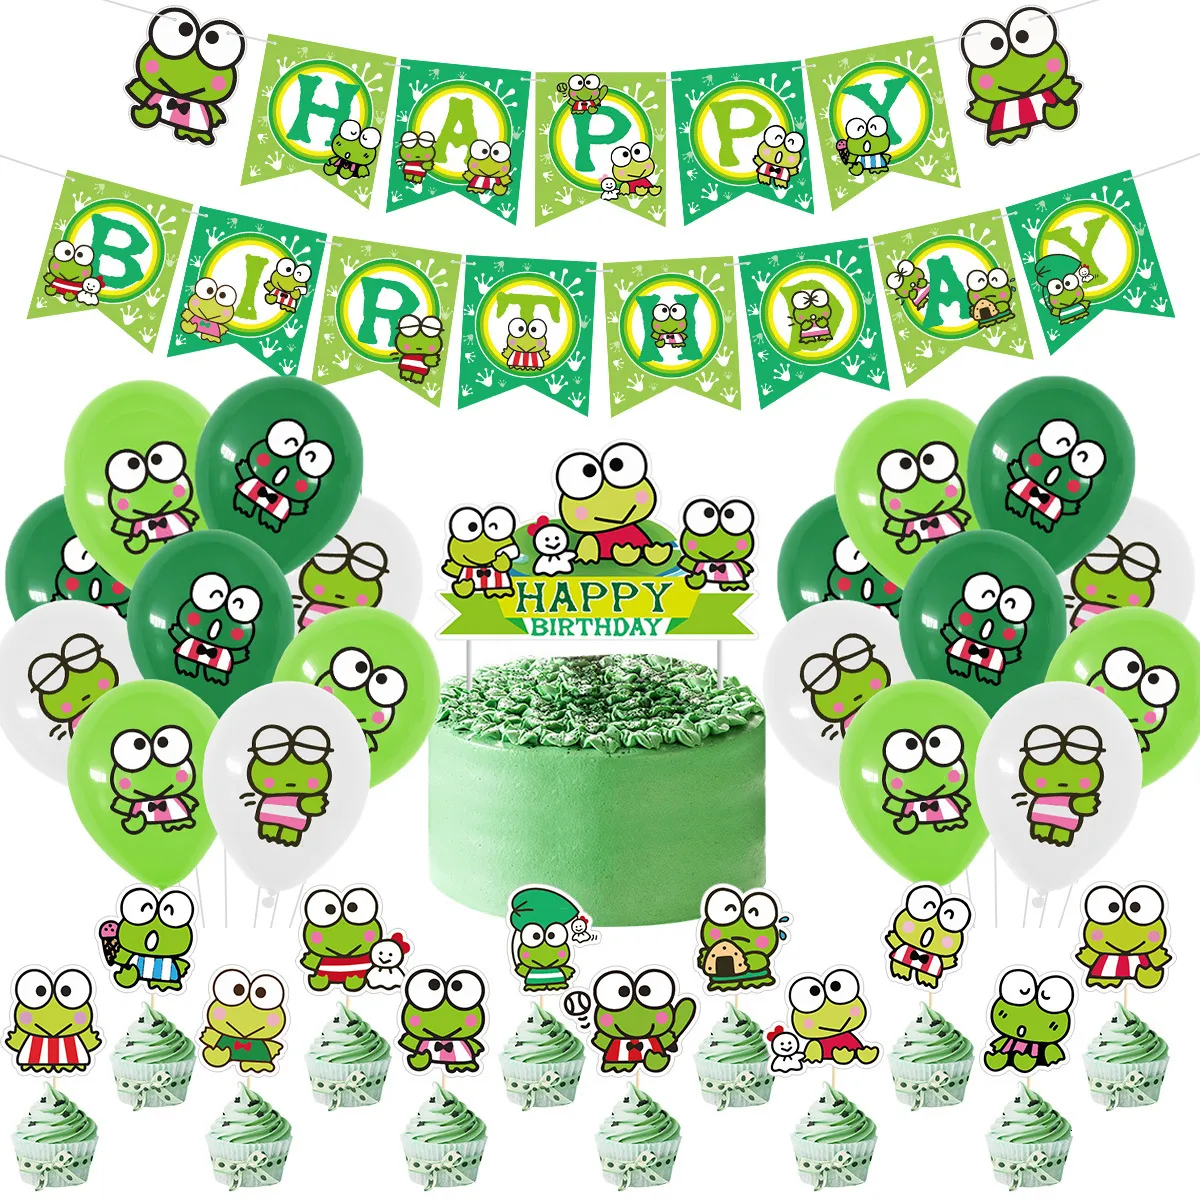 Другое мероприятие вечеринка поставляет Sursurpirse Frog Тема День рождения украшения зеленых воздушных шаров.